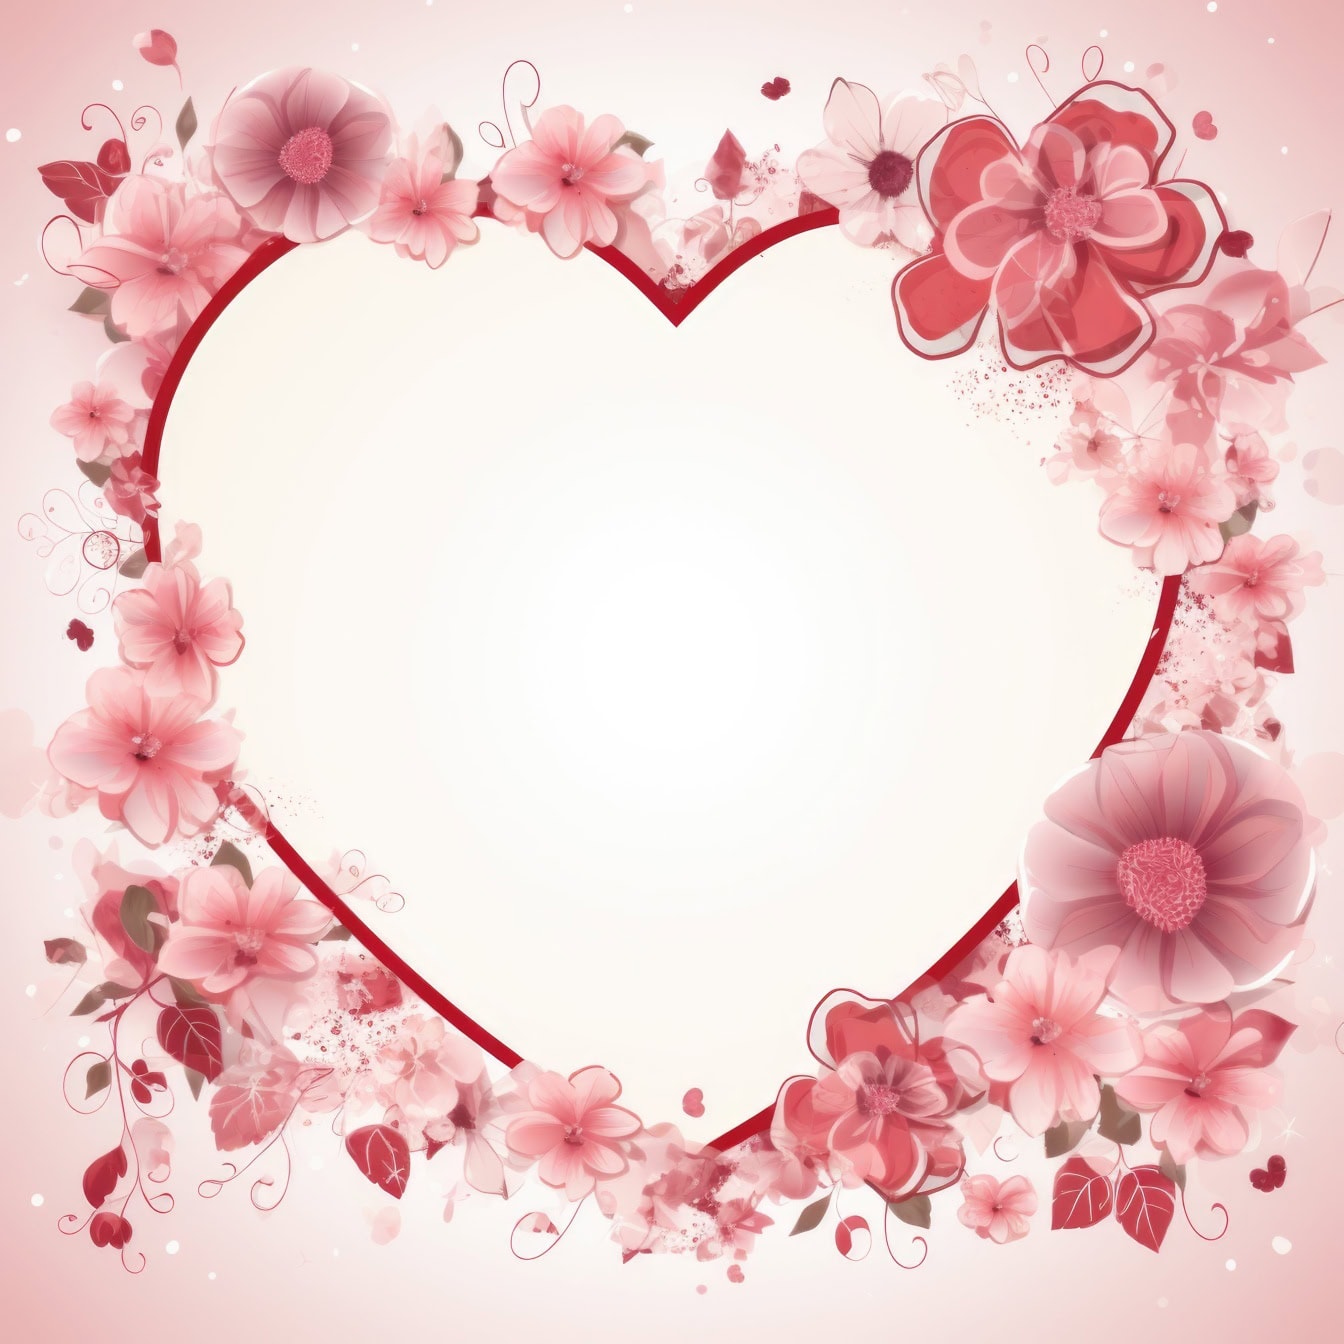 ロマンチックなバレンタインデーのハート型のグリーティングカードテンプレートと花のフレーム付き